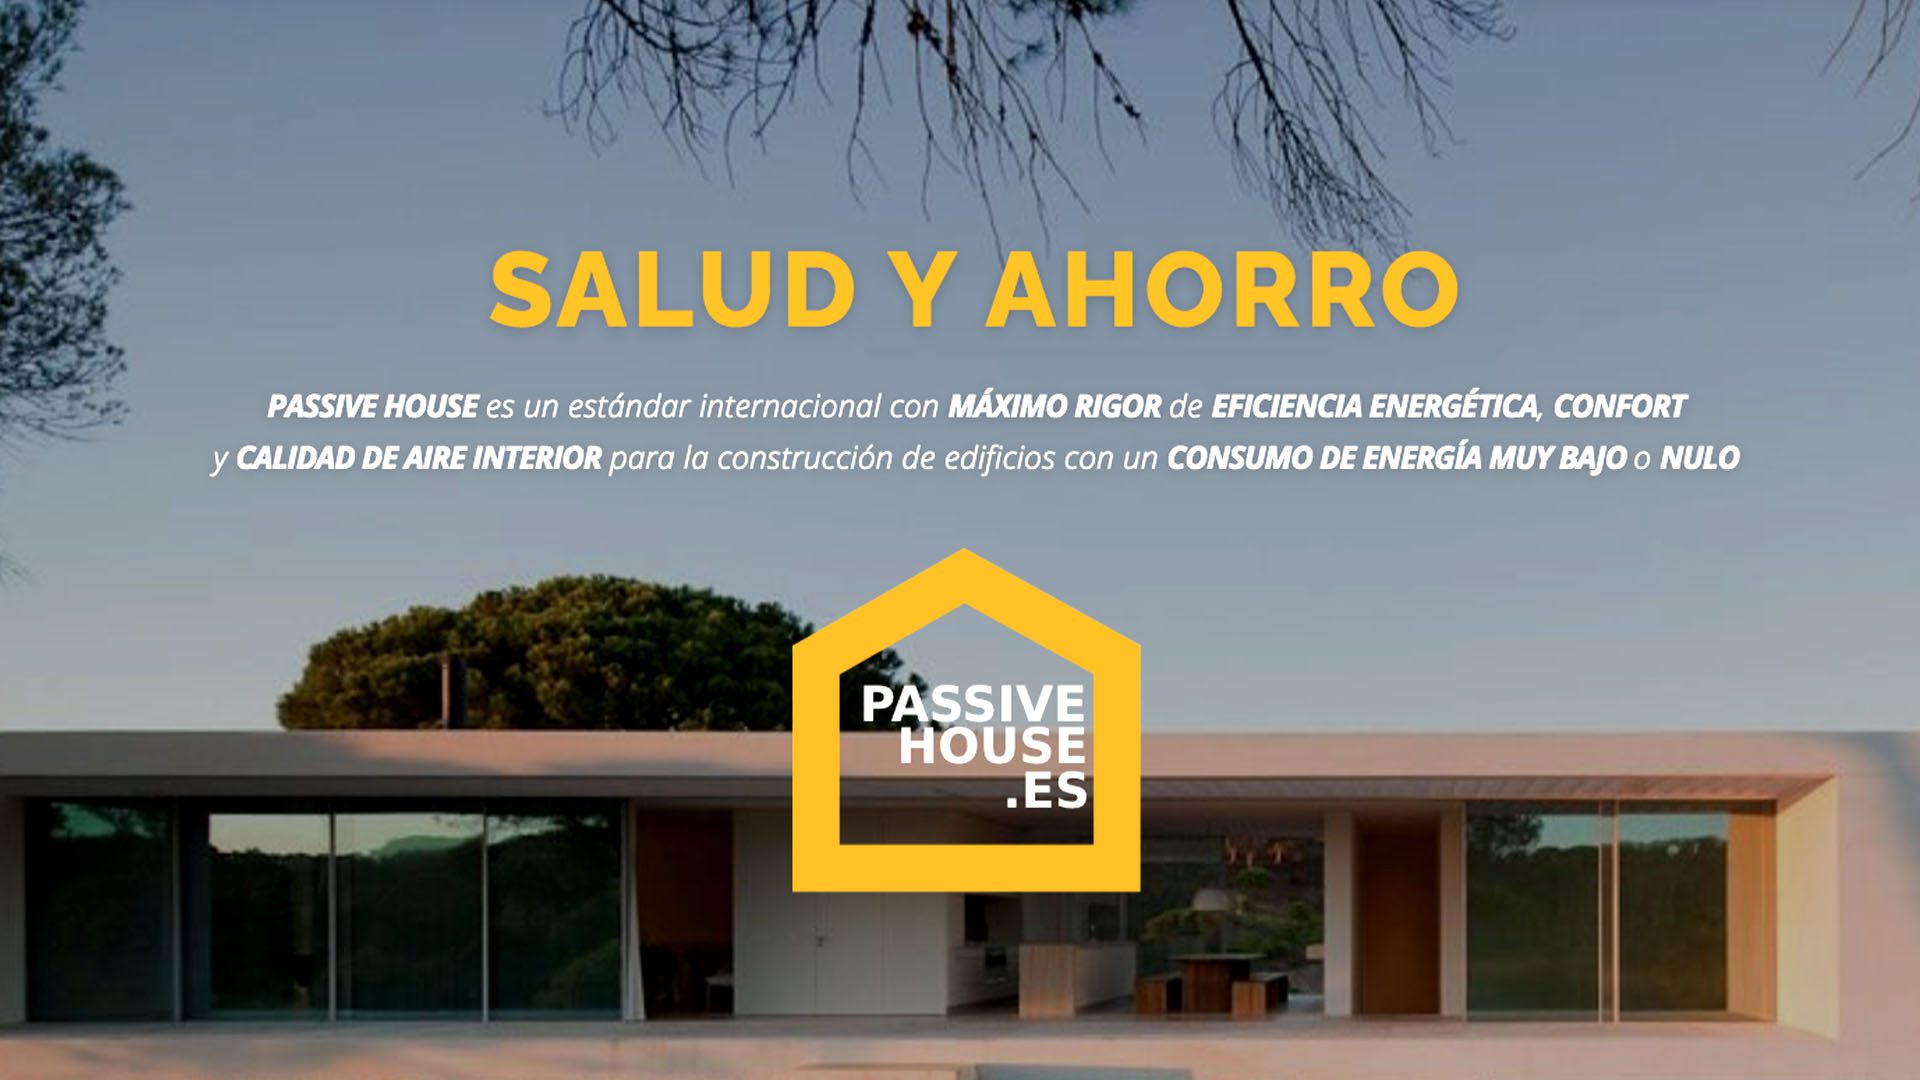 PASSIVE HOUSE es un estándar internacional con MÁXIMO RIGOR de EFICIENCIA ENERGÉTICA, CONFORT y CALIDAD DE AIRE INTERIOR